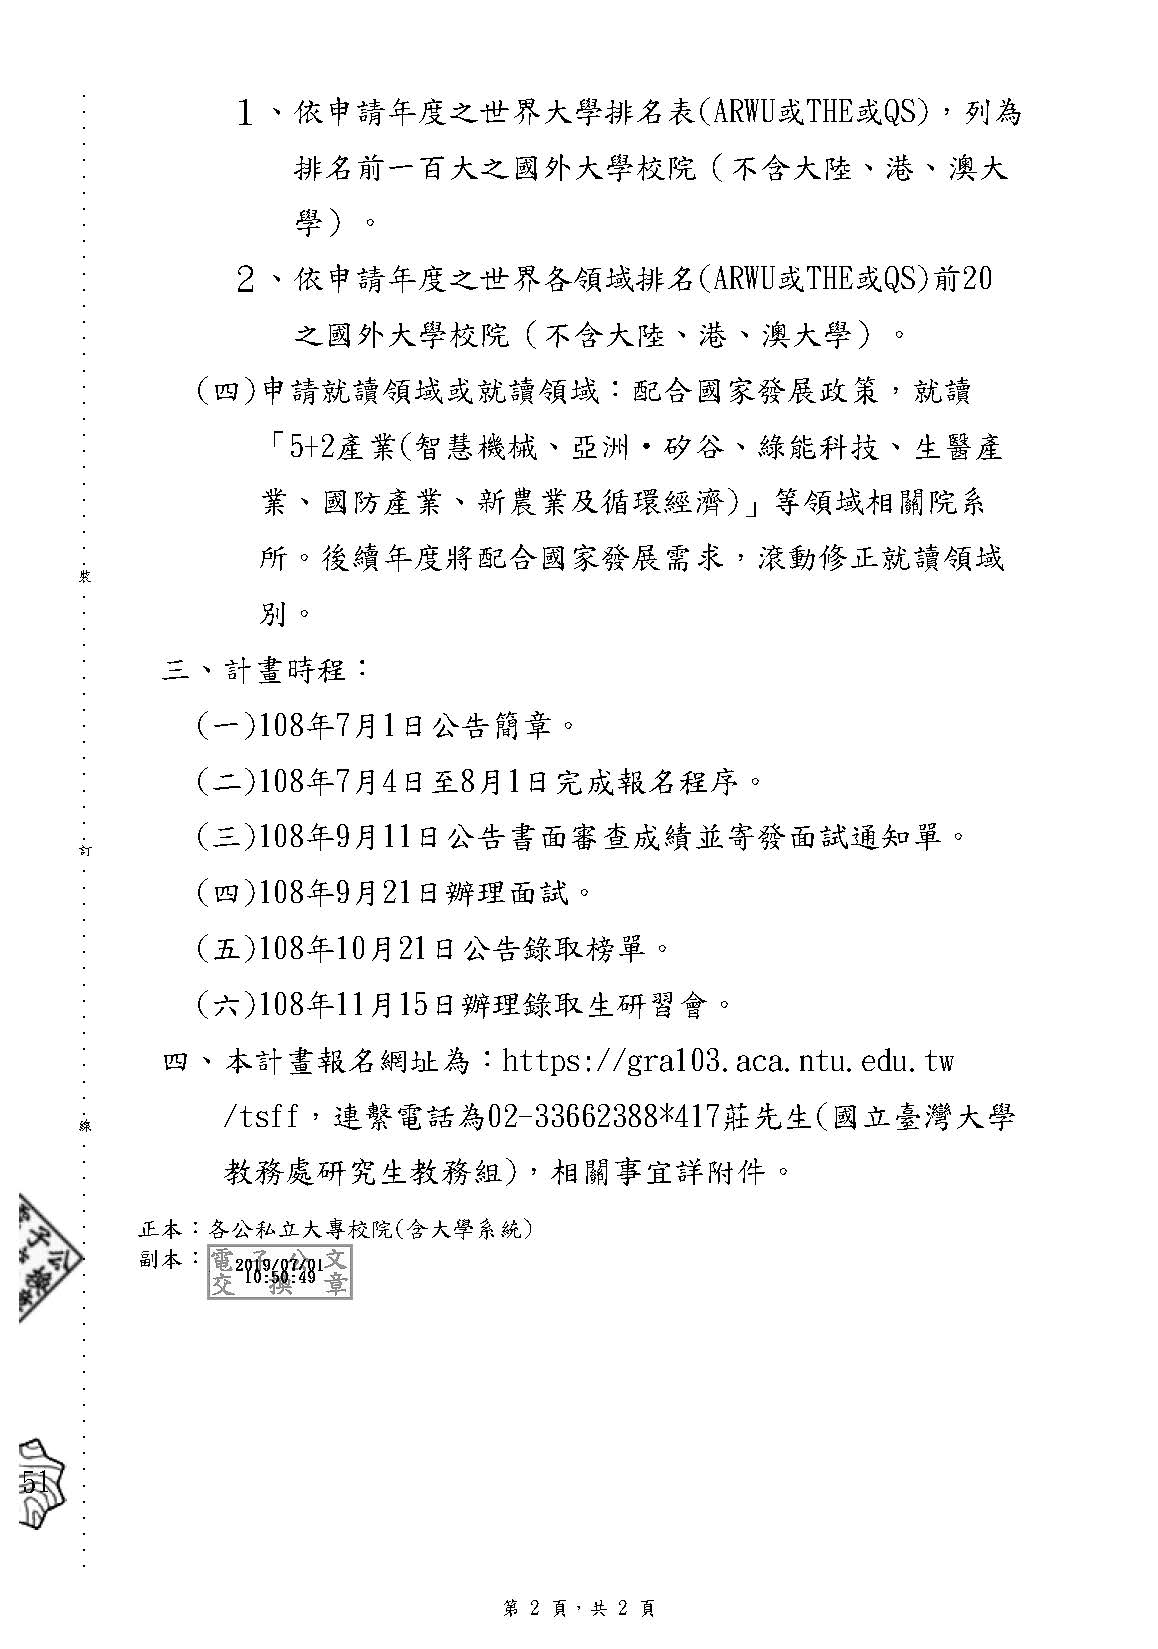 教育部 臺灣重點領域獎學金試辦計畫 頁面 2